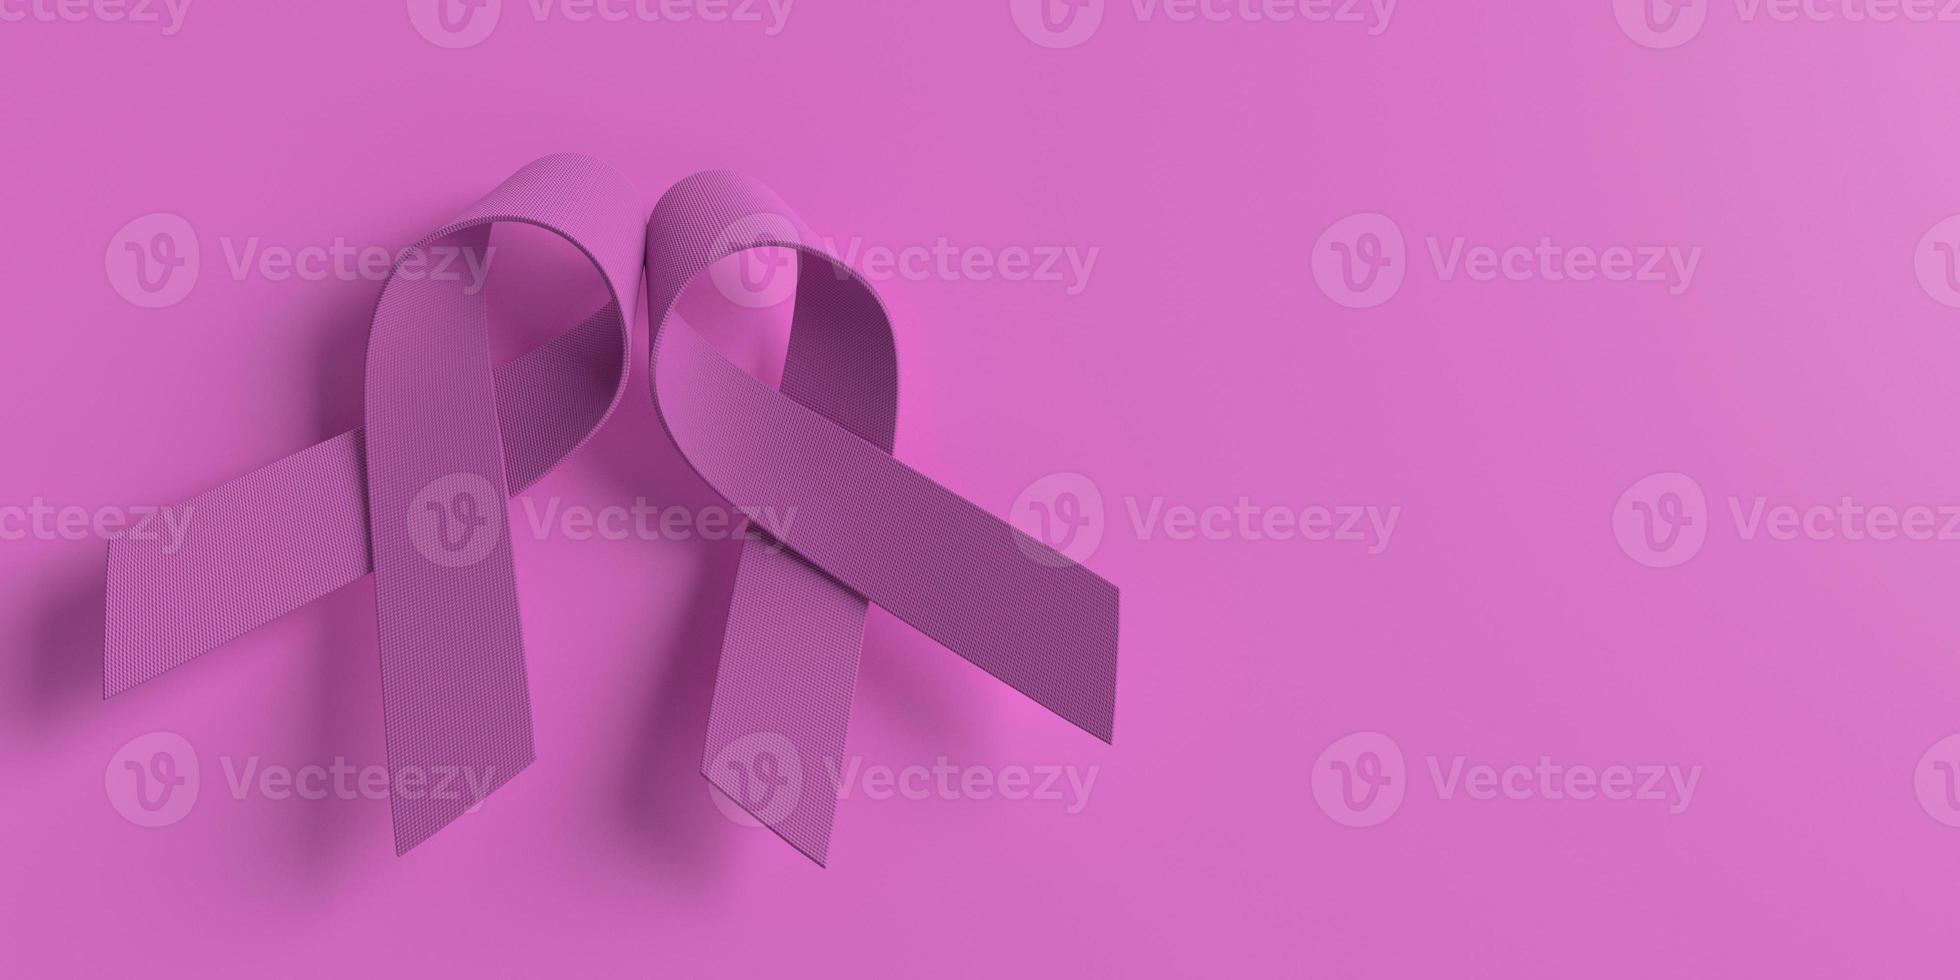 roze kleur strijd gezond verschillend twee groep globaal bewustzijn borst kanker oktober maand oncologie wereld vrijwilliger ziekte ziekte medisch boog roze rood gezondheidszorg icoon vrouw vrouw geloof van mening zijn foto